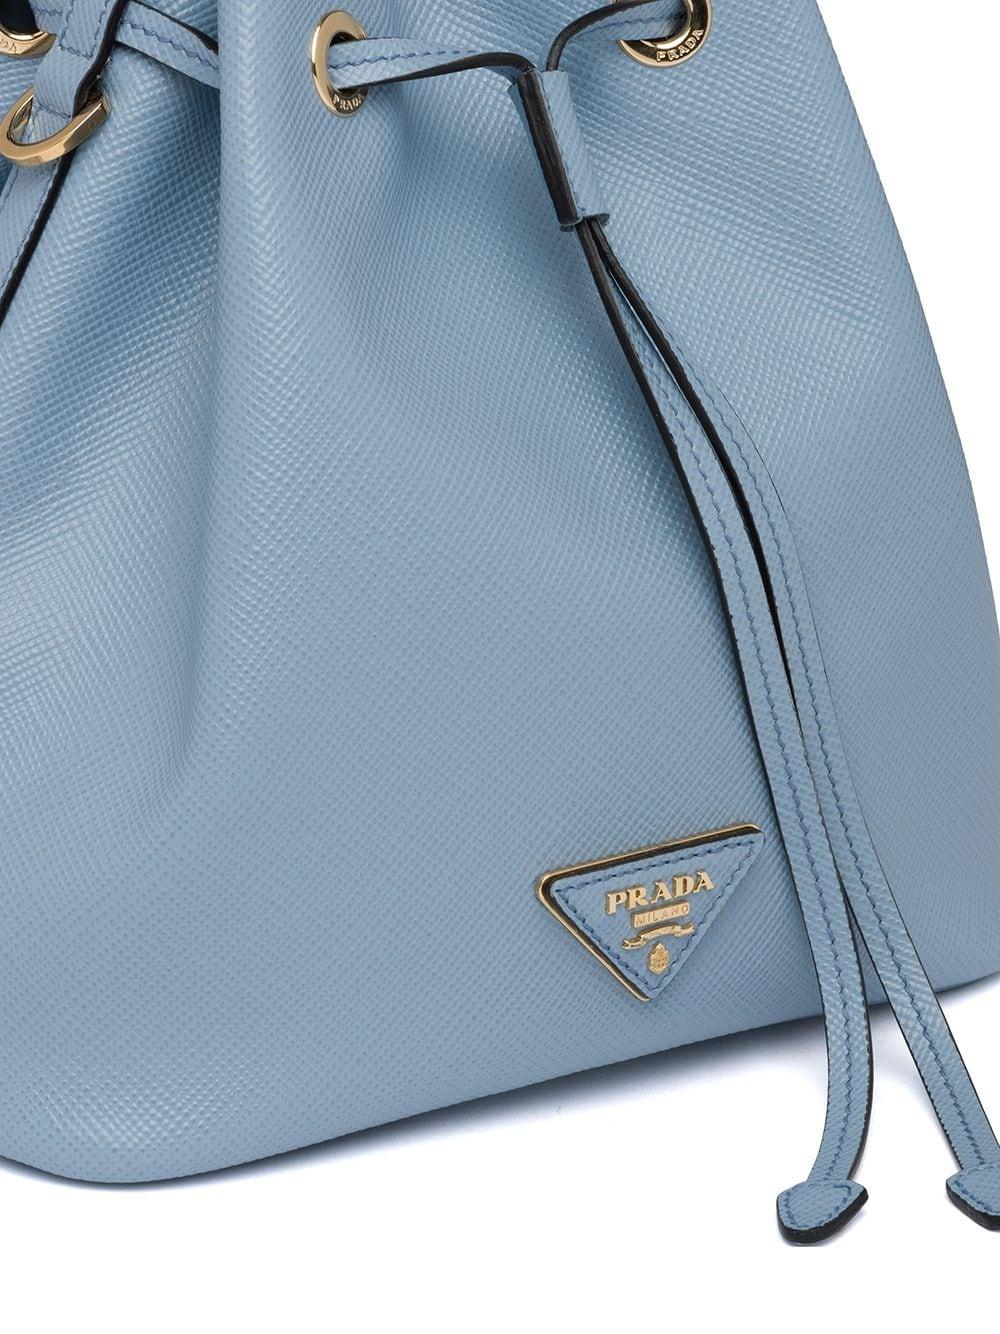 Prada Saffiano Leather Bucket Bag in Blue | Lyst